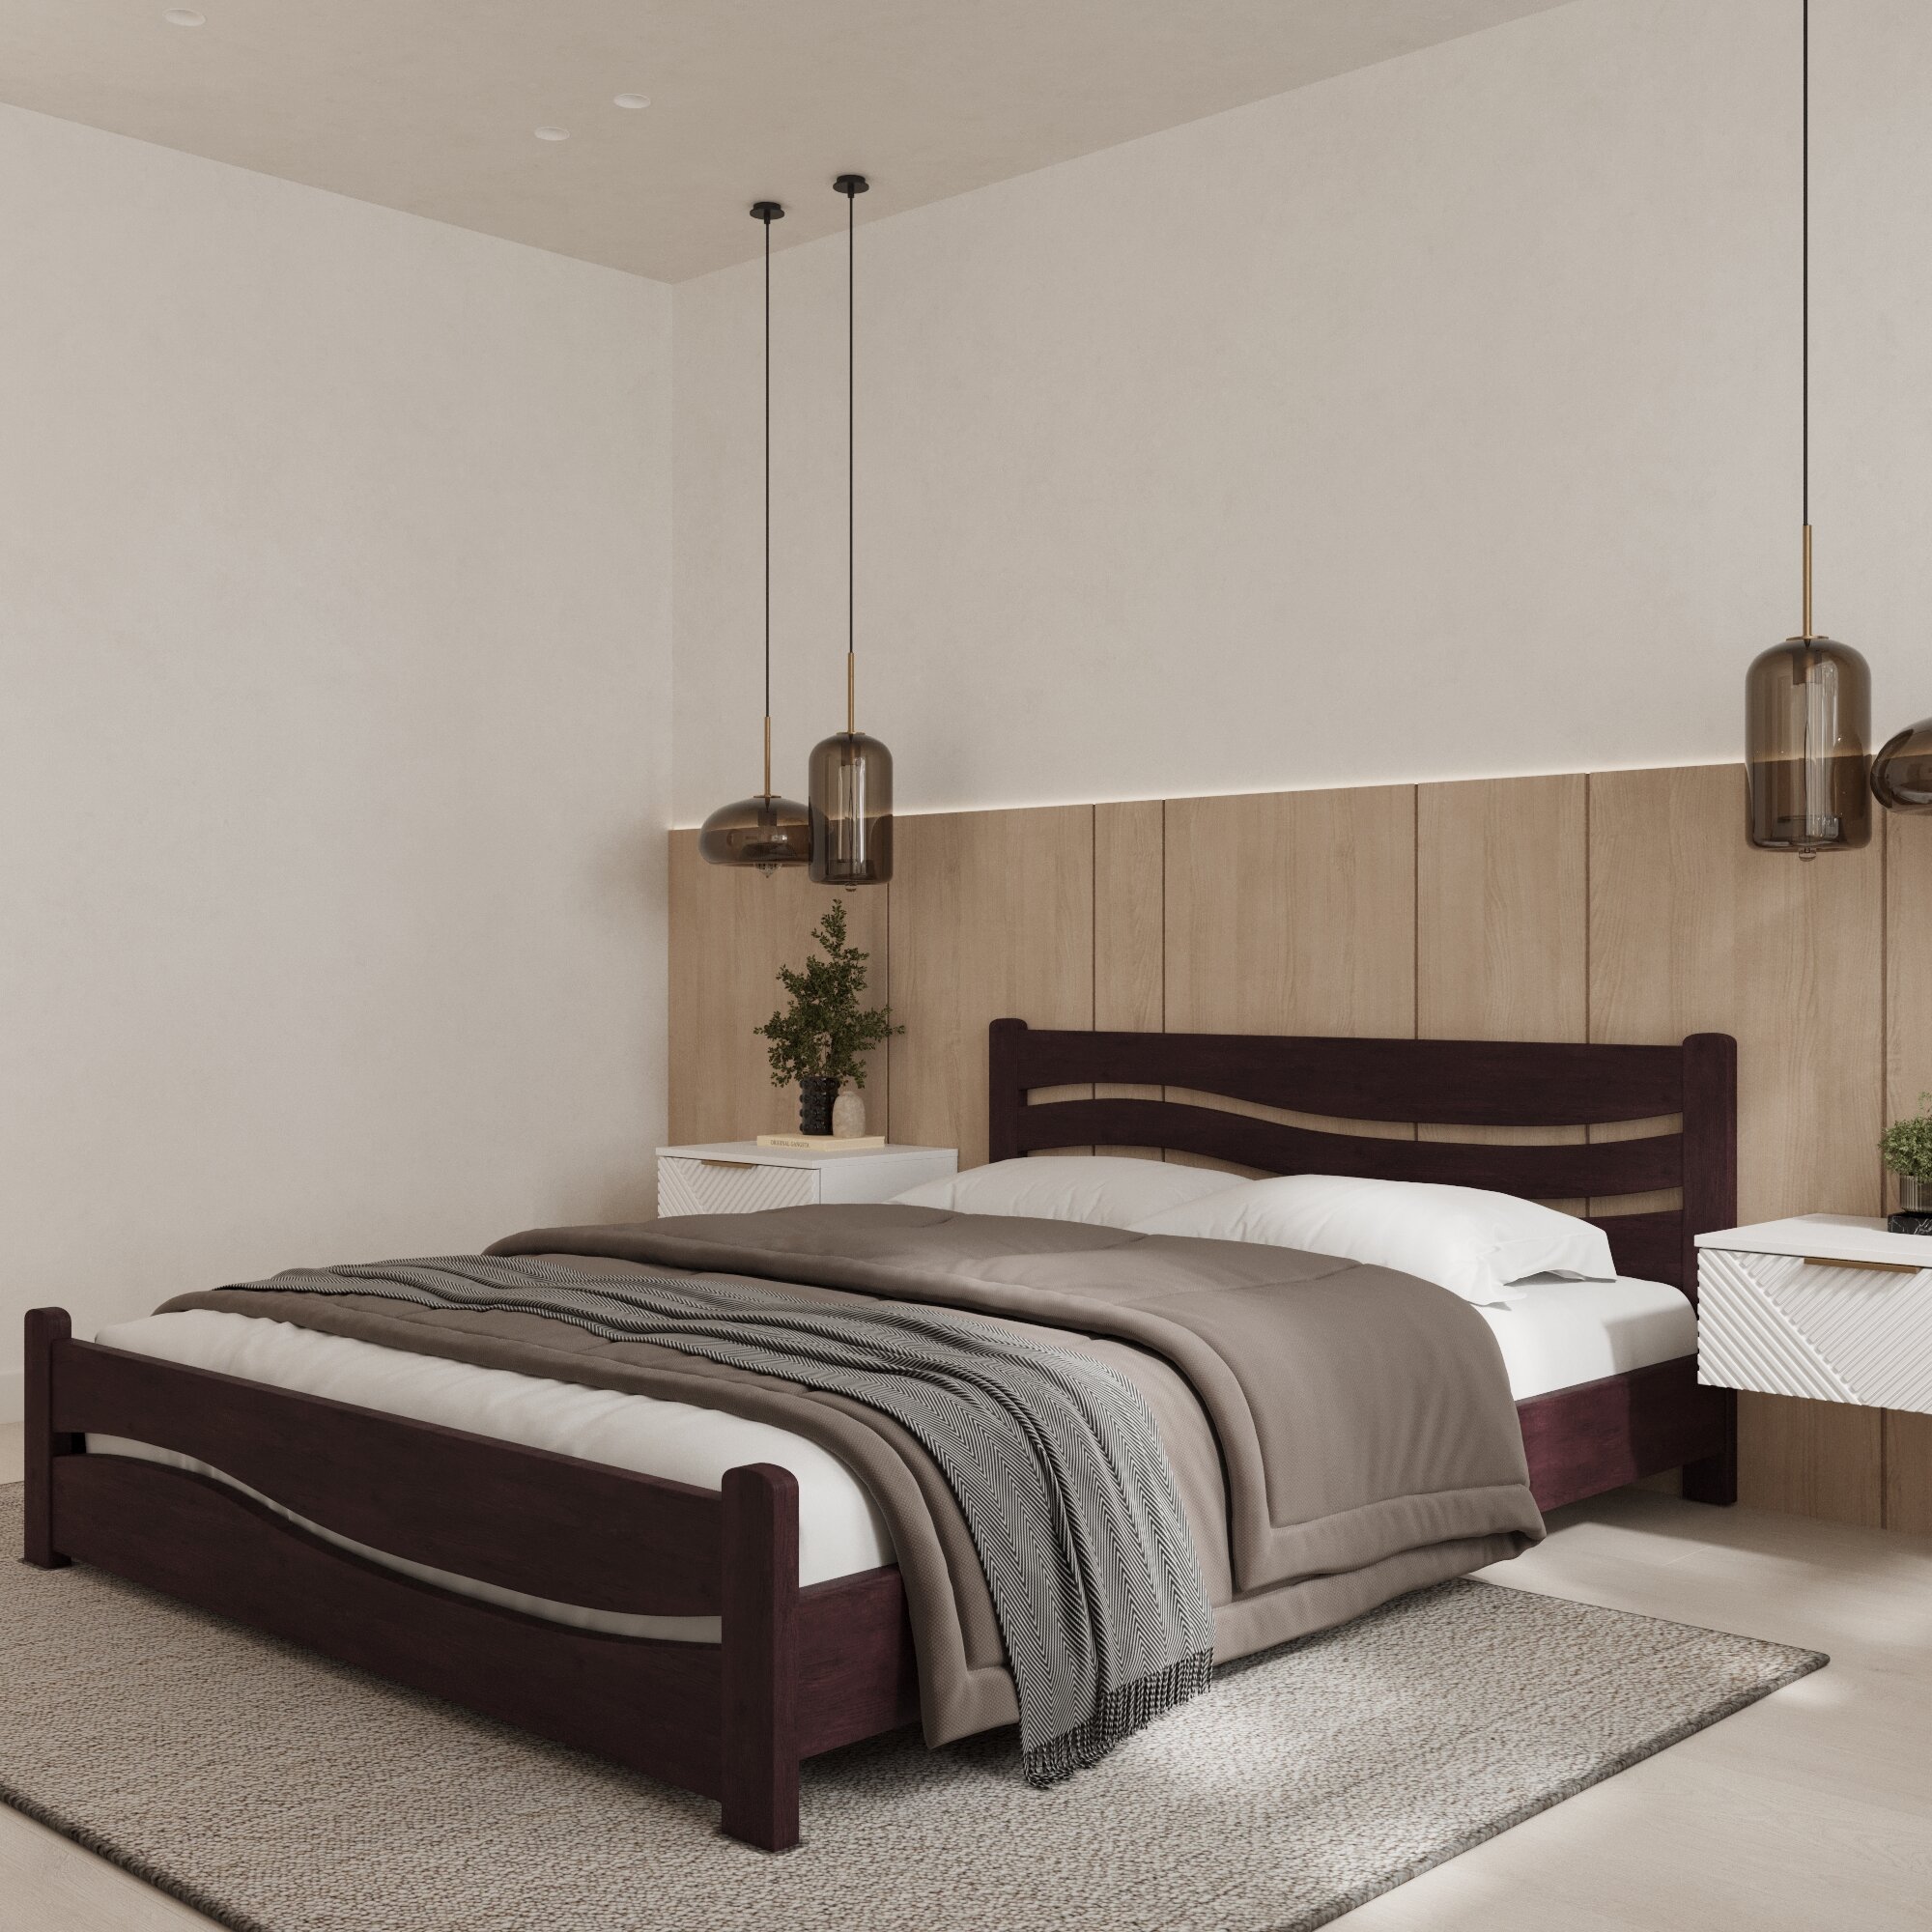 Двуспальная кровать Кровать деревянная Волна 120*200, 120х200 см, ММК-Древ